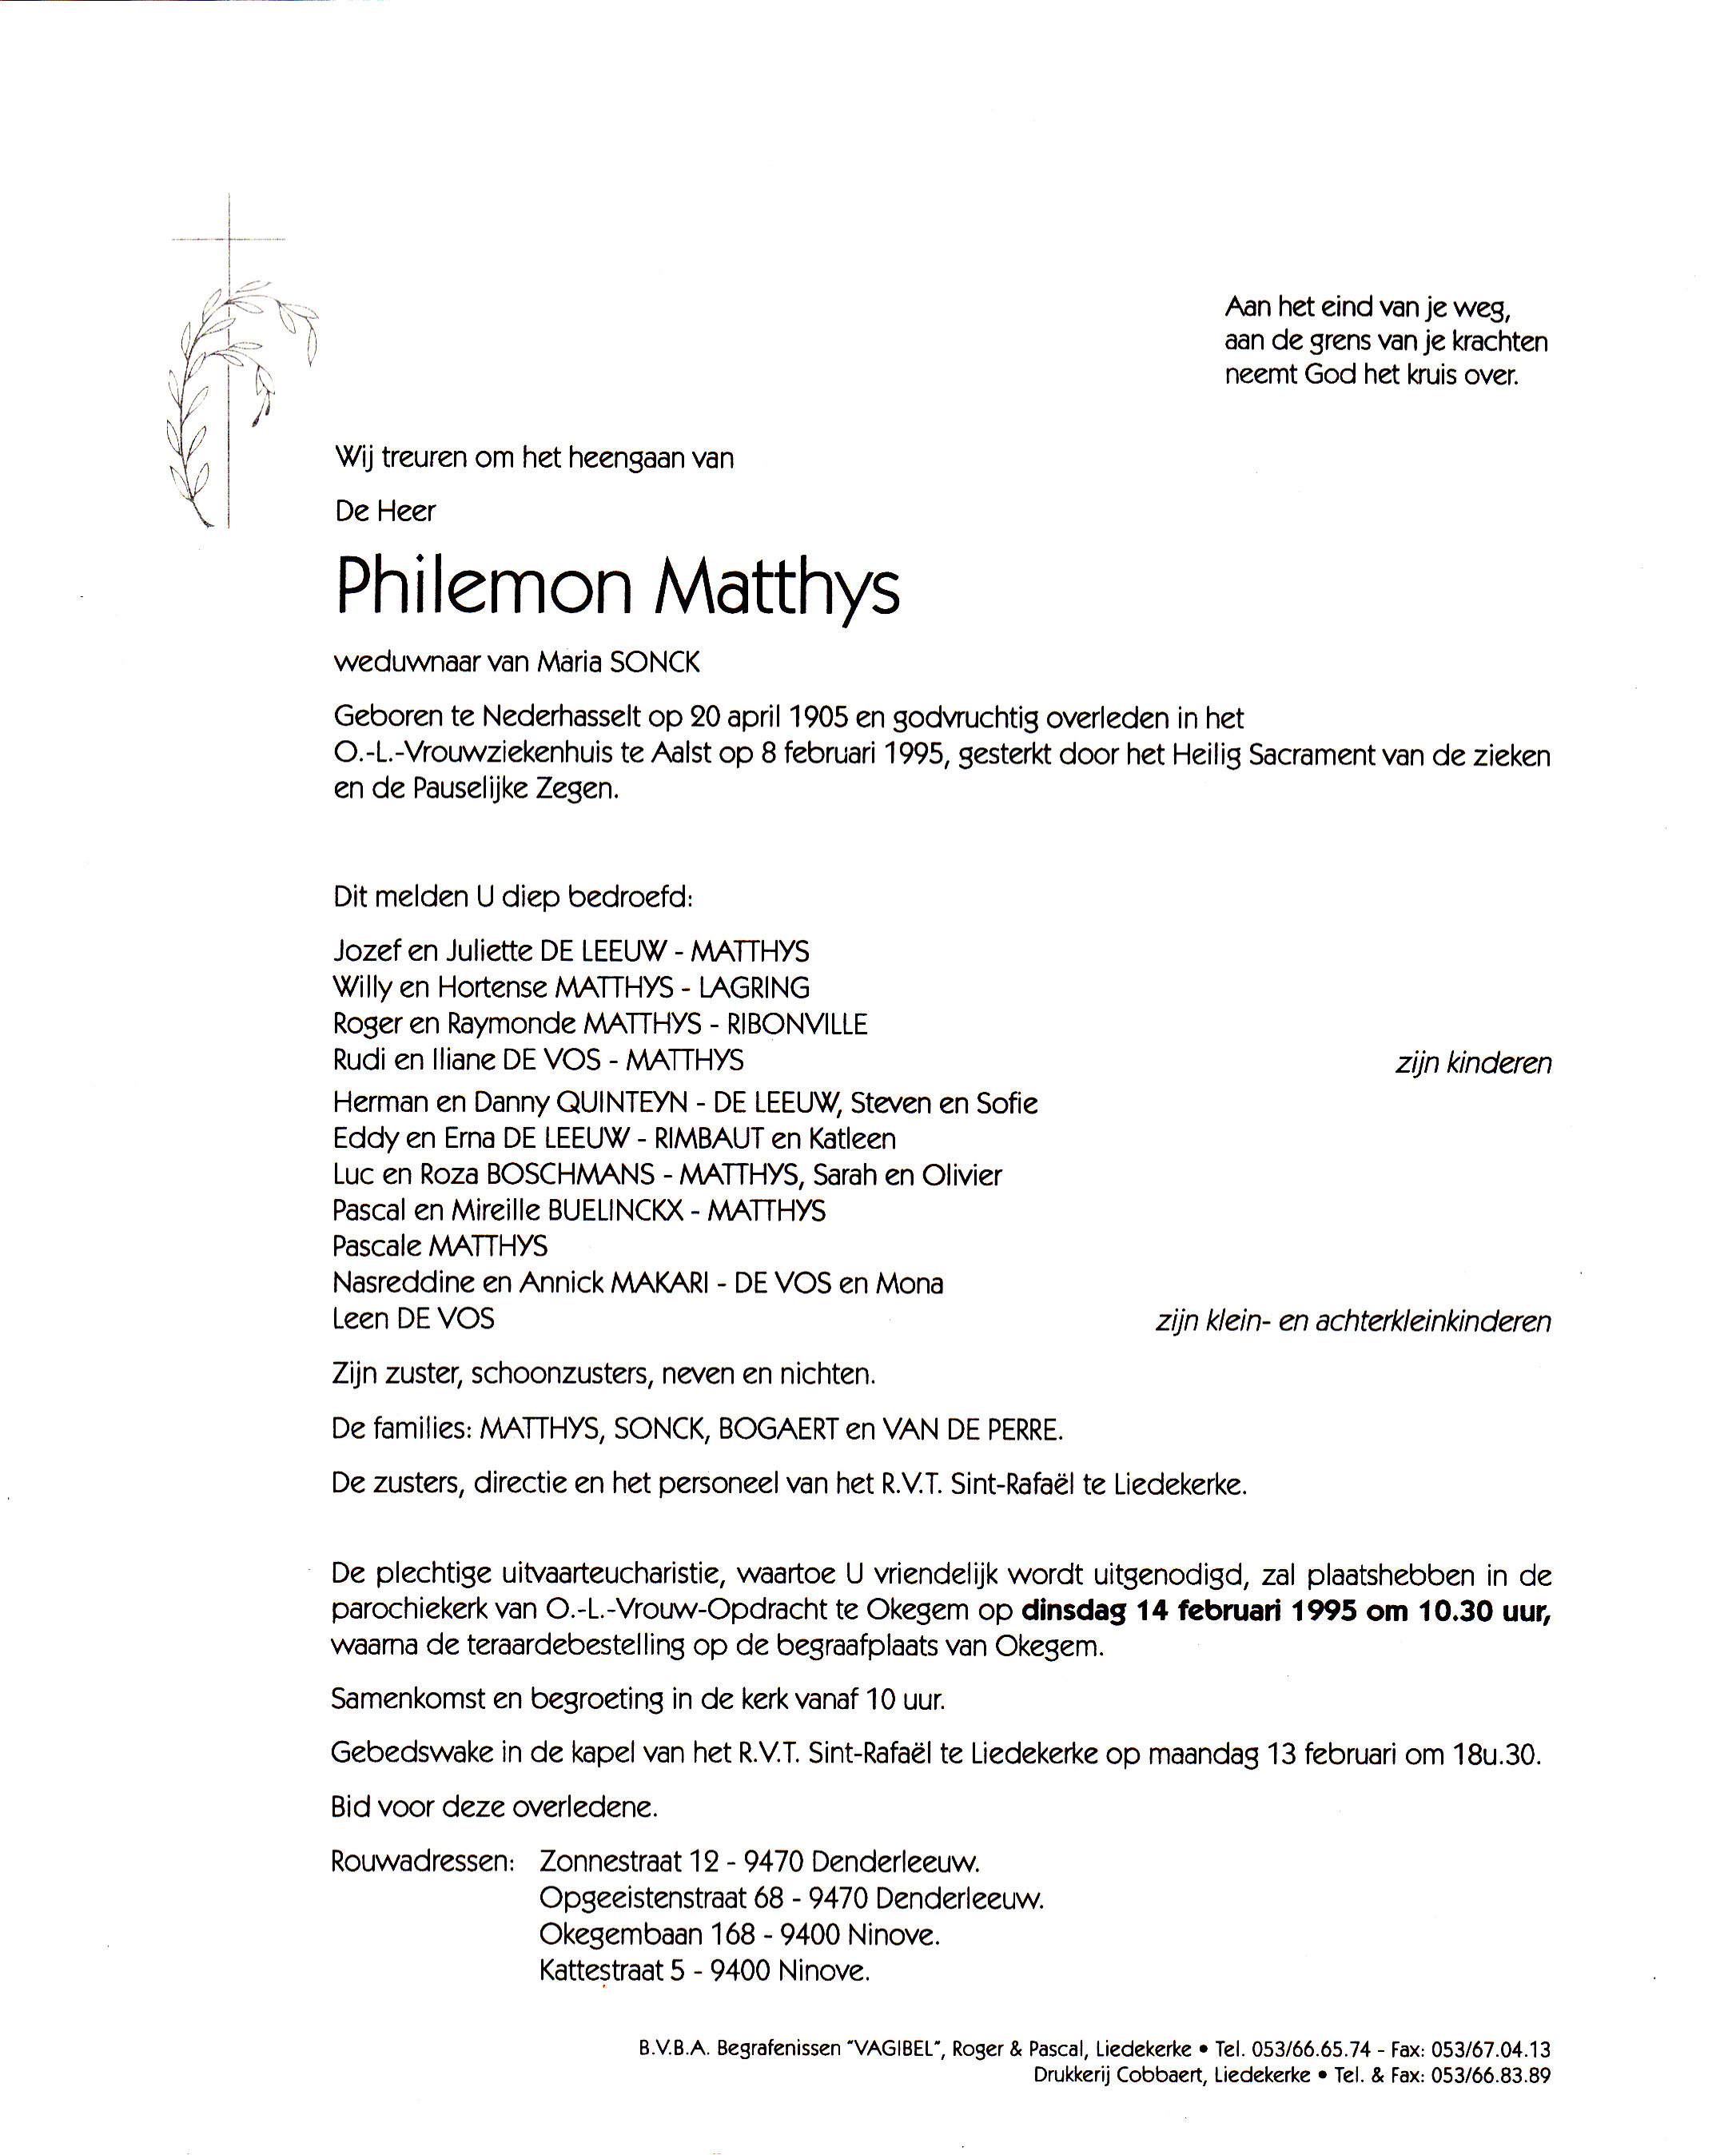 Matthys Philemon 